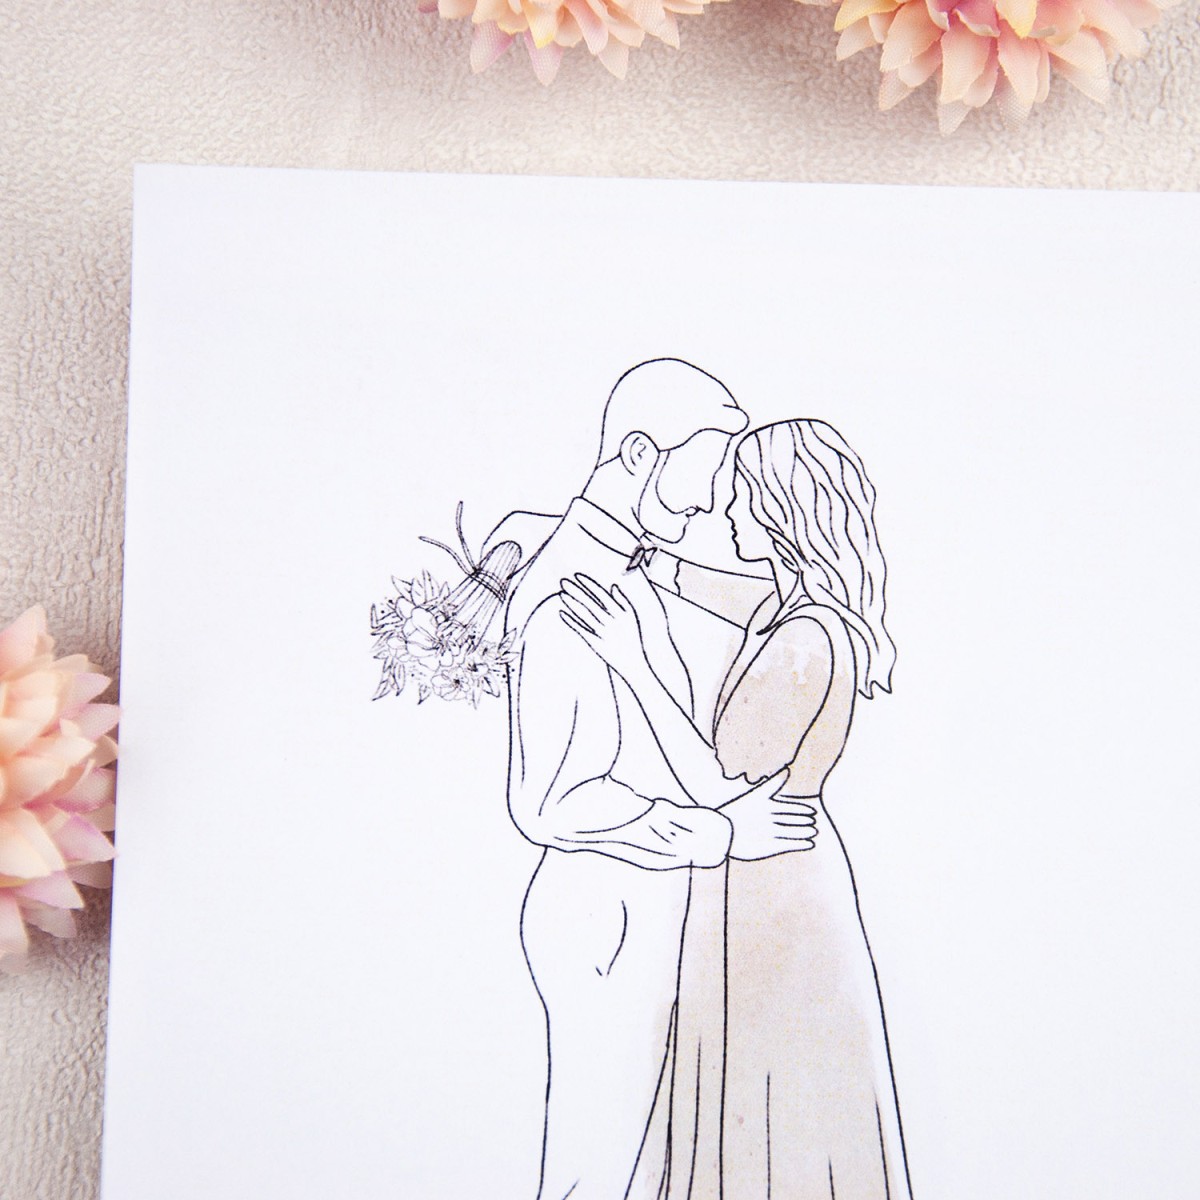 Minimalistyczne zaproszenia ślubne ze szkicowaną Parą Młodą do własnoręcznego uzupełnienia - Hug Me - LAST MINUTE